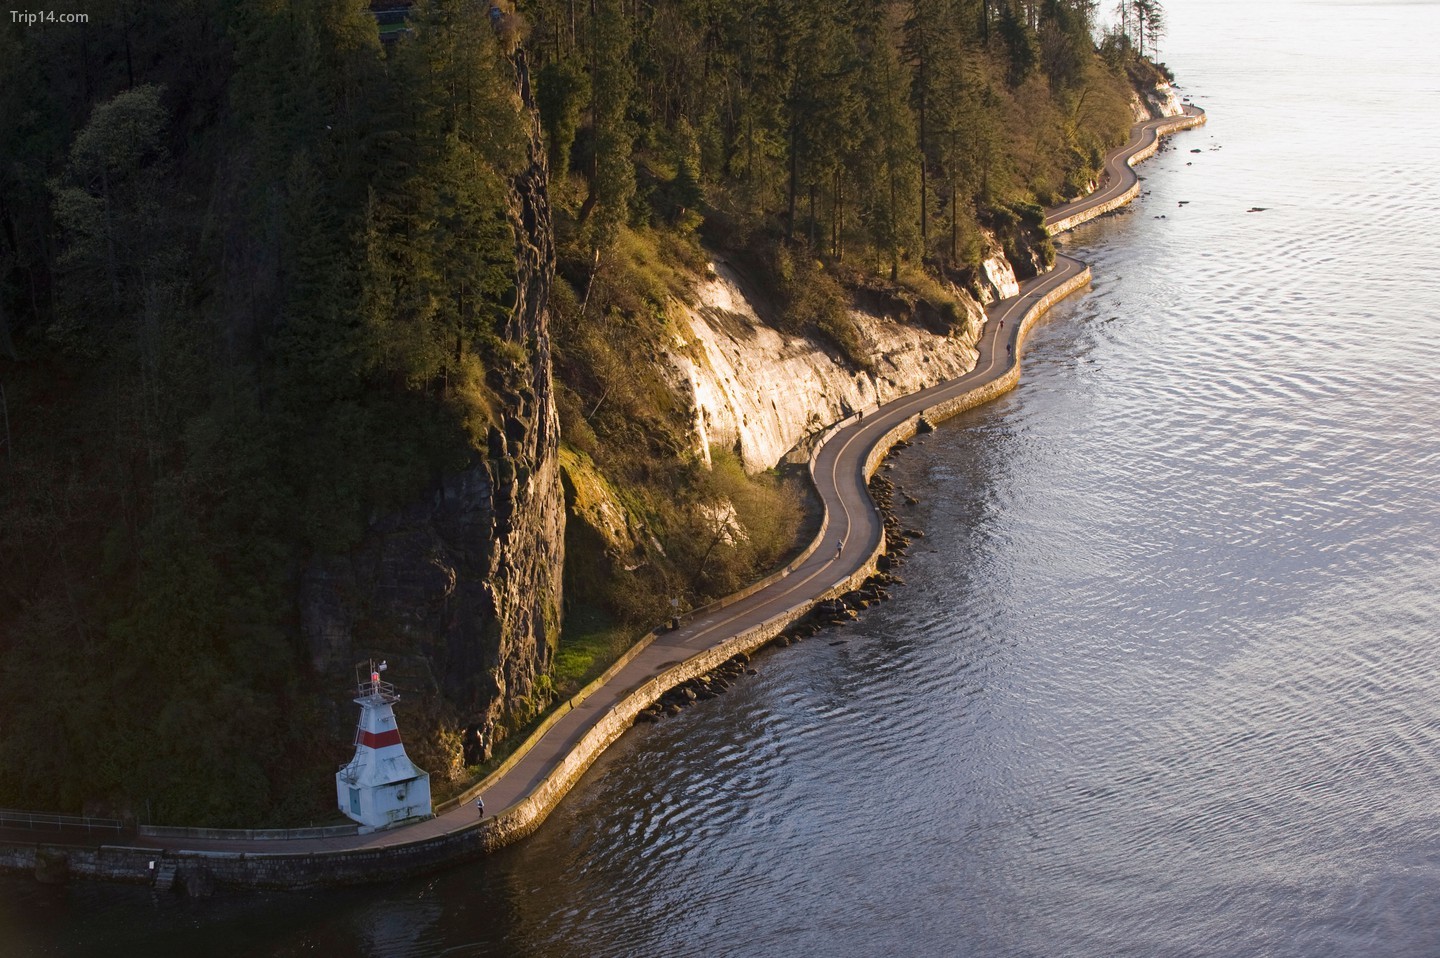  Đèn hiệu trên tường đi dạo ở Công viên Stanley, Burrard Inlet, Vancouver, British Columbia, Canada, Bắc Mỹ   |   